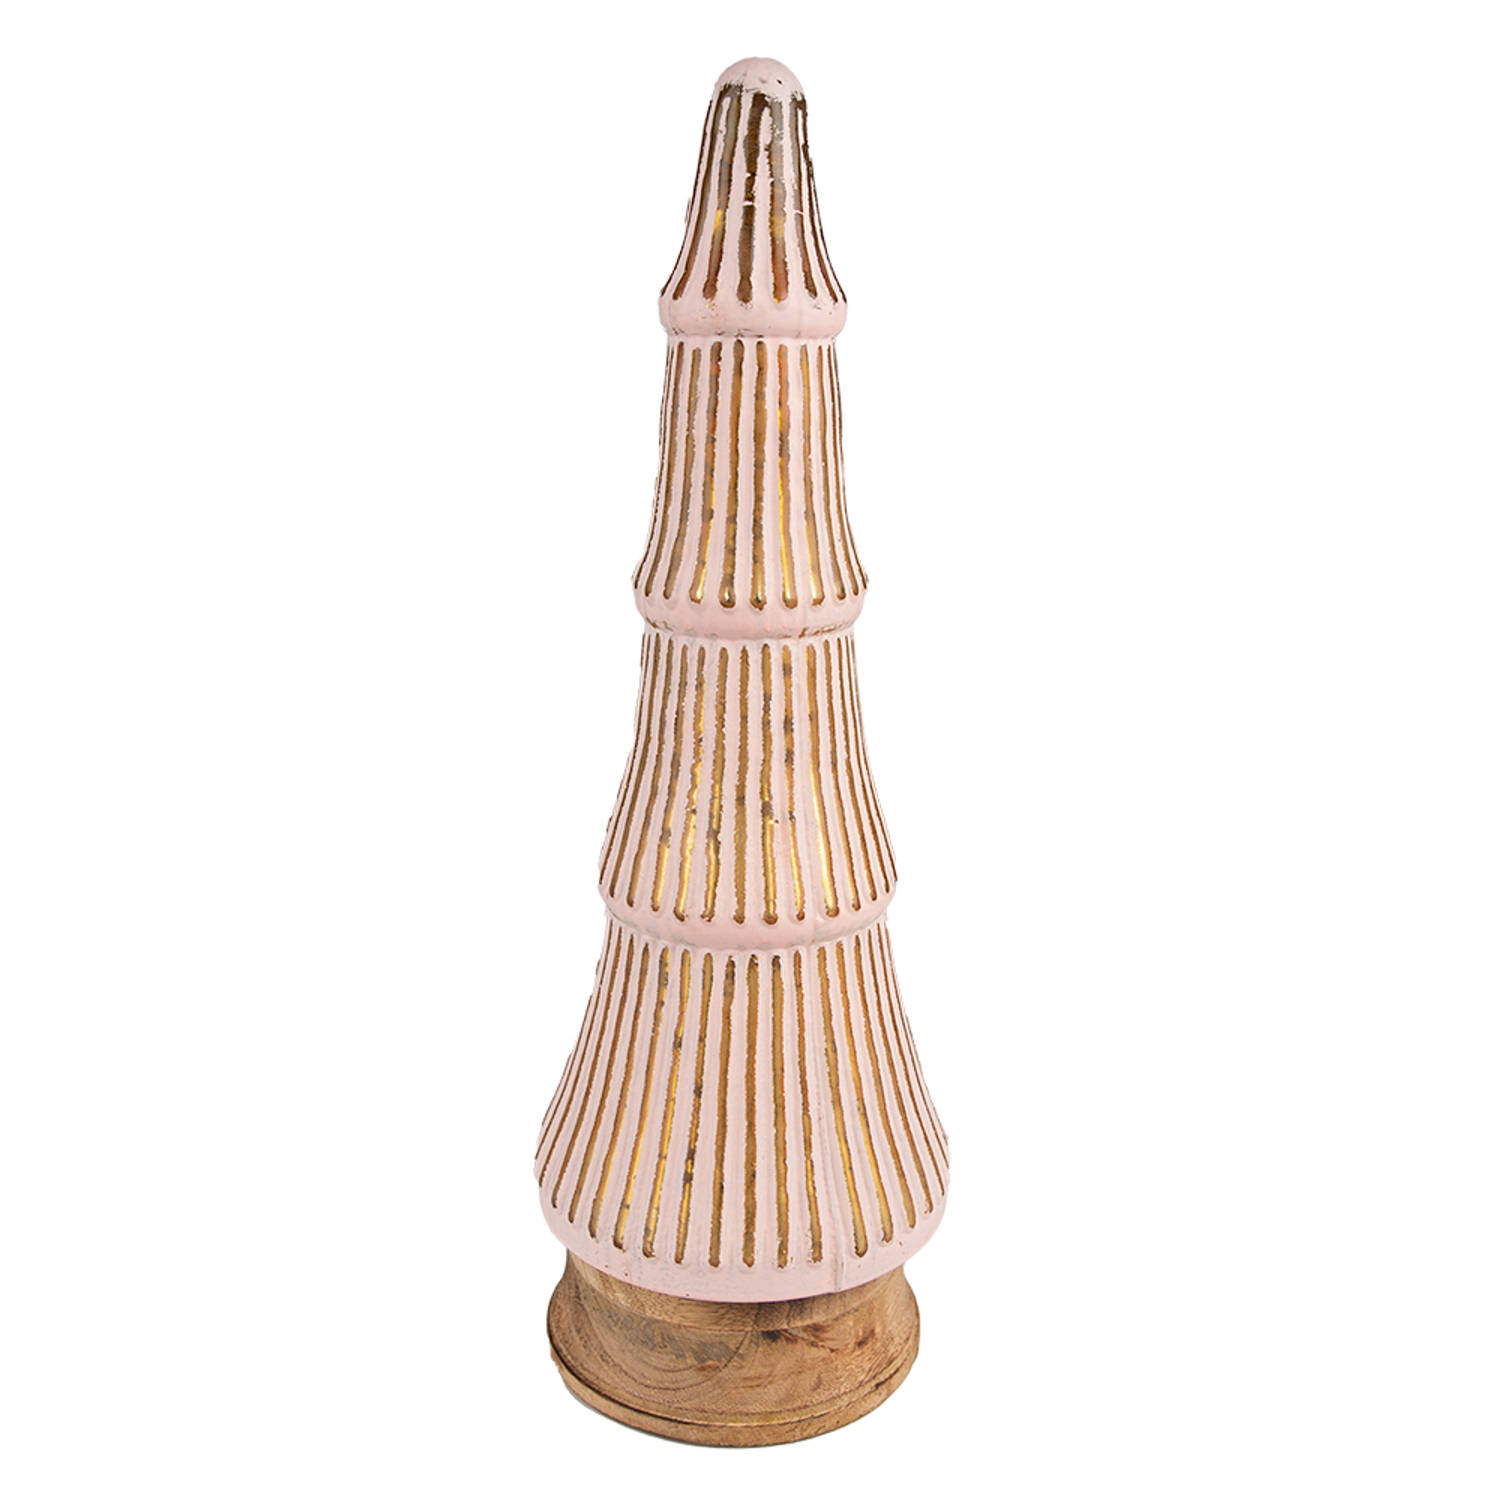 HAES DECO - Decoratieve Kerstboom - Formaat Ø 15x44 cm - Kleur Roze - Materiaal Hout / Glas - Kerstversiering, Kerstdecoratie